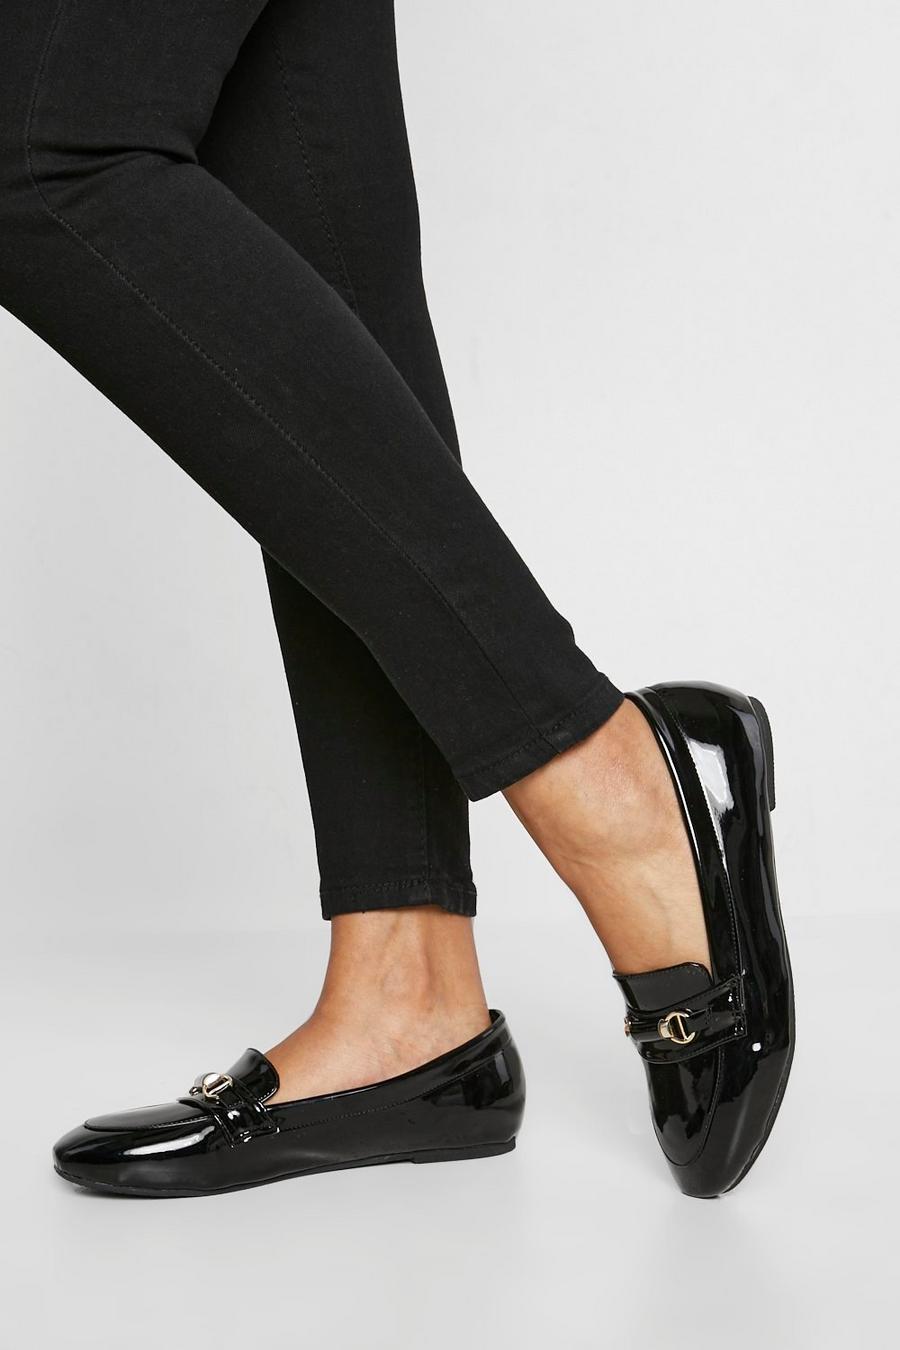 Black svart Loafers med rund tå och spännen